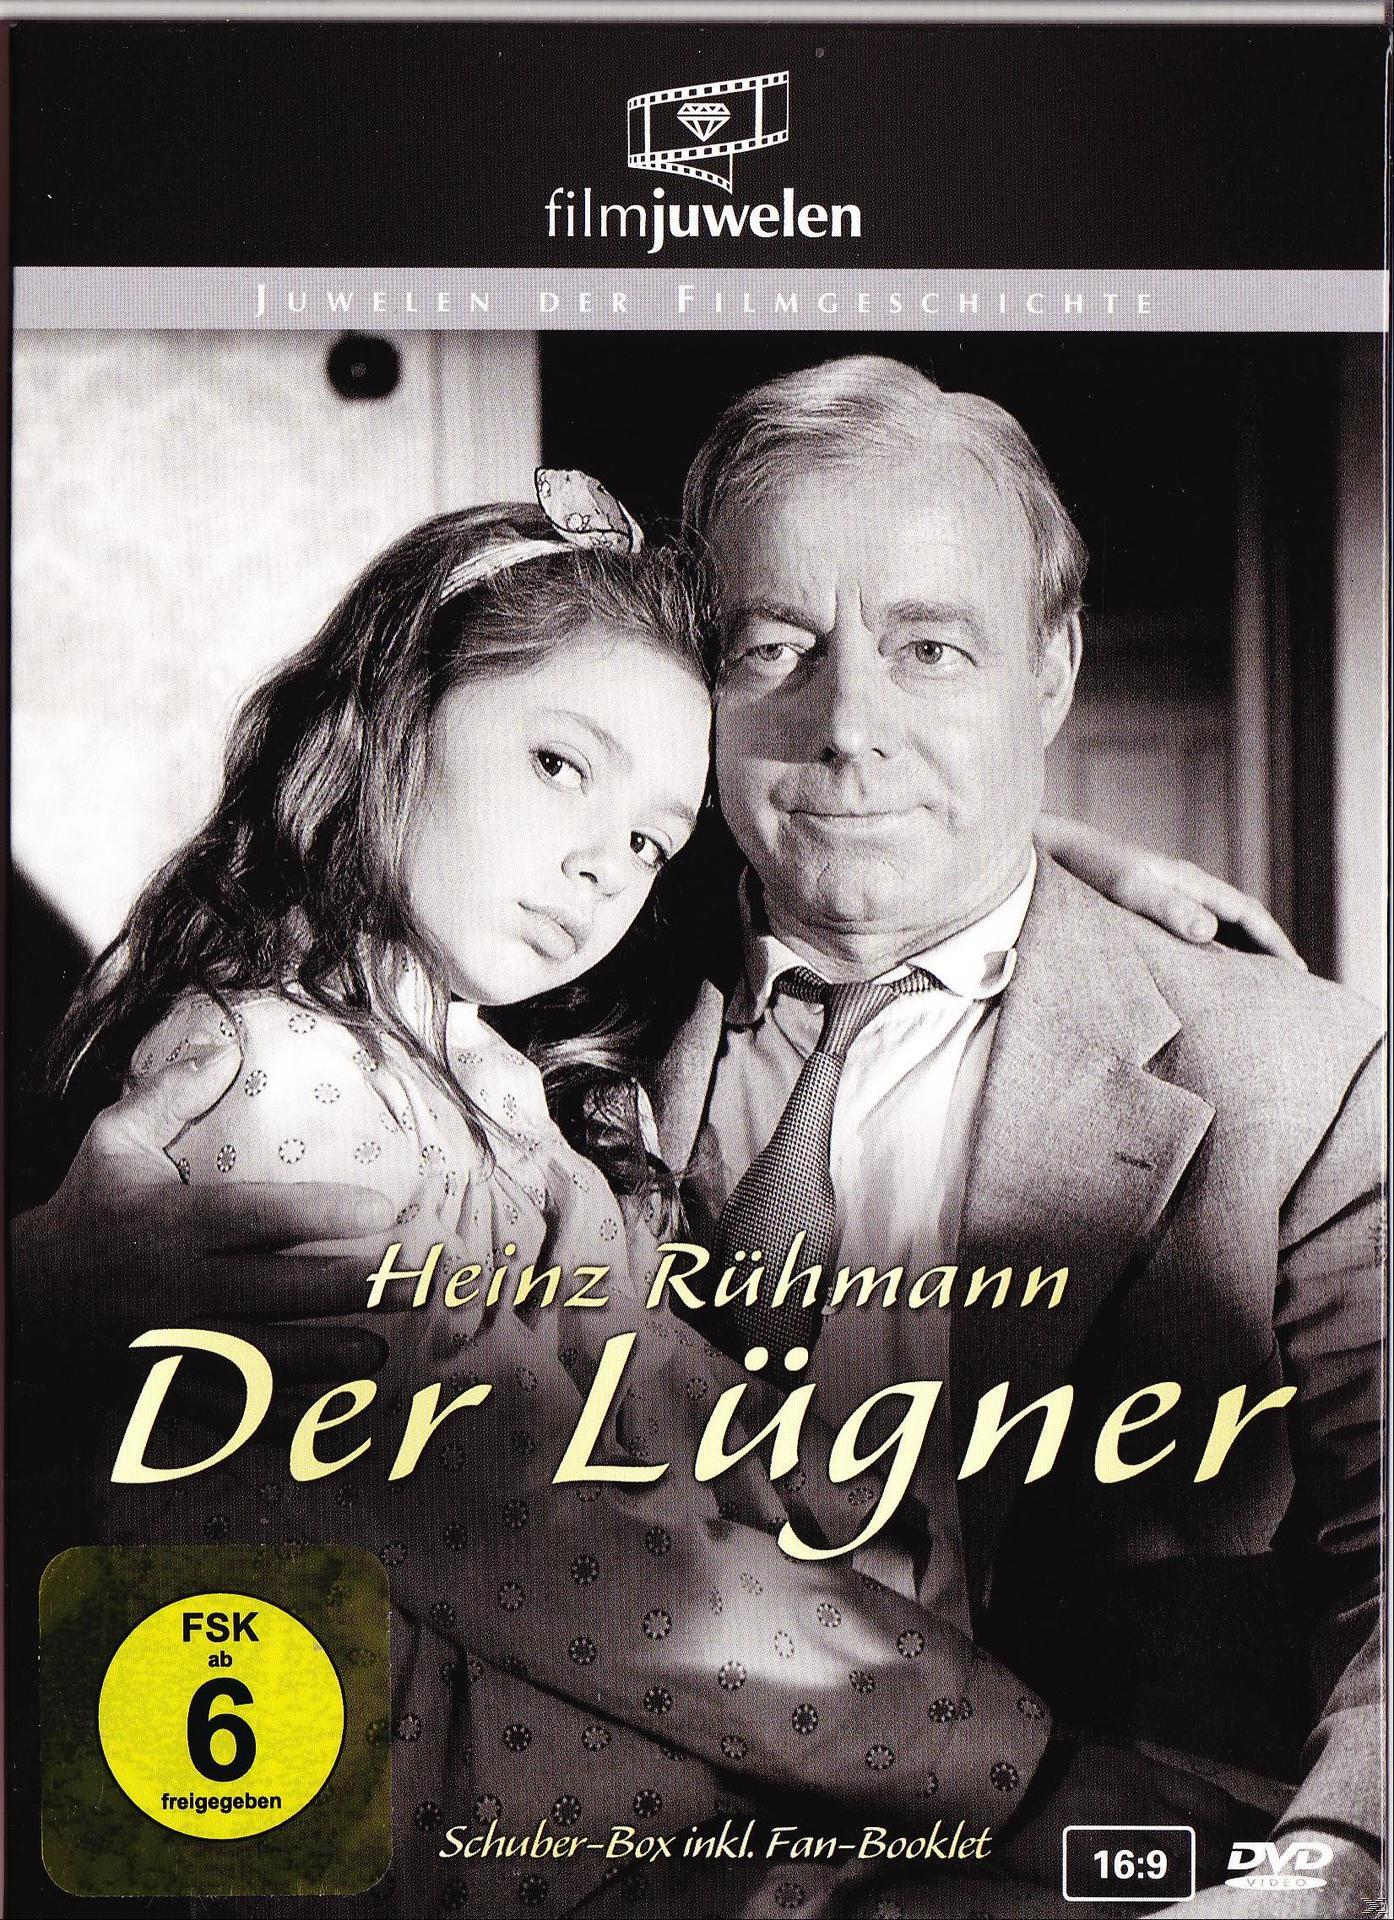 DER LÜGNER (NEUAUFLAGE) DVD